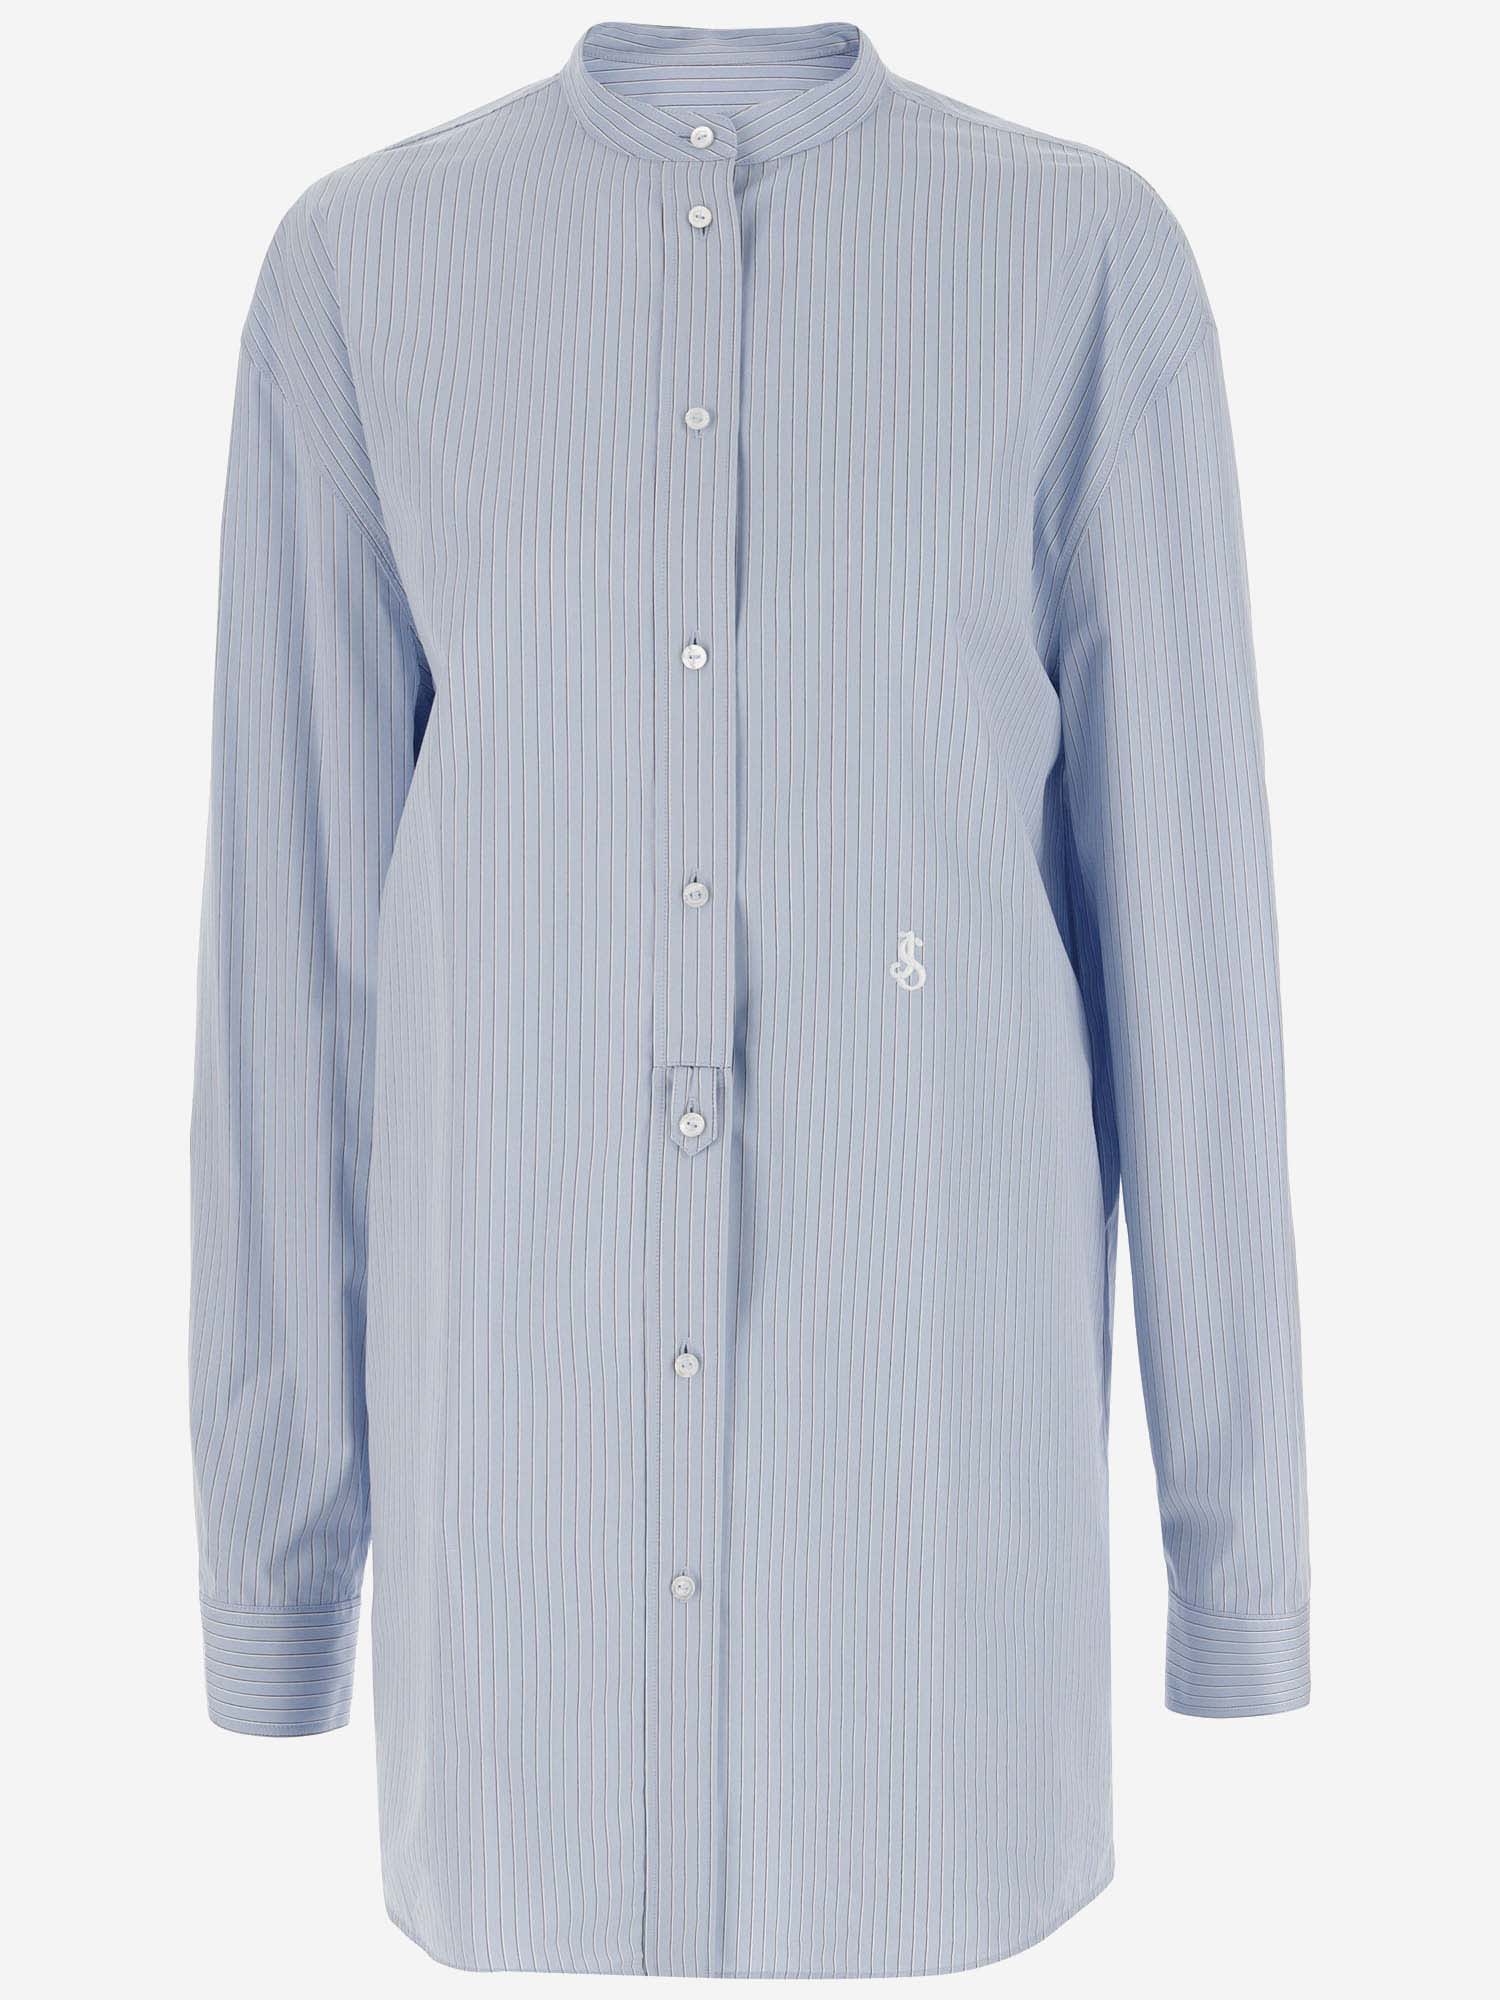 Jil Sander Cotton Shirt In Light Blue